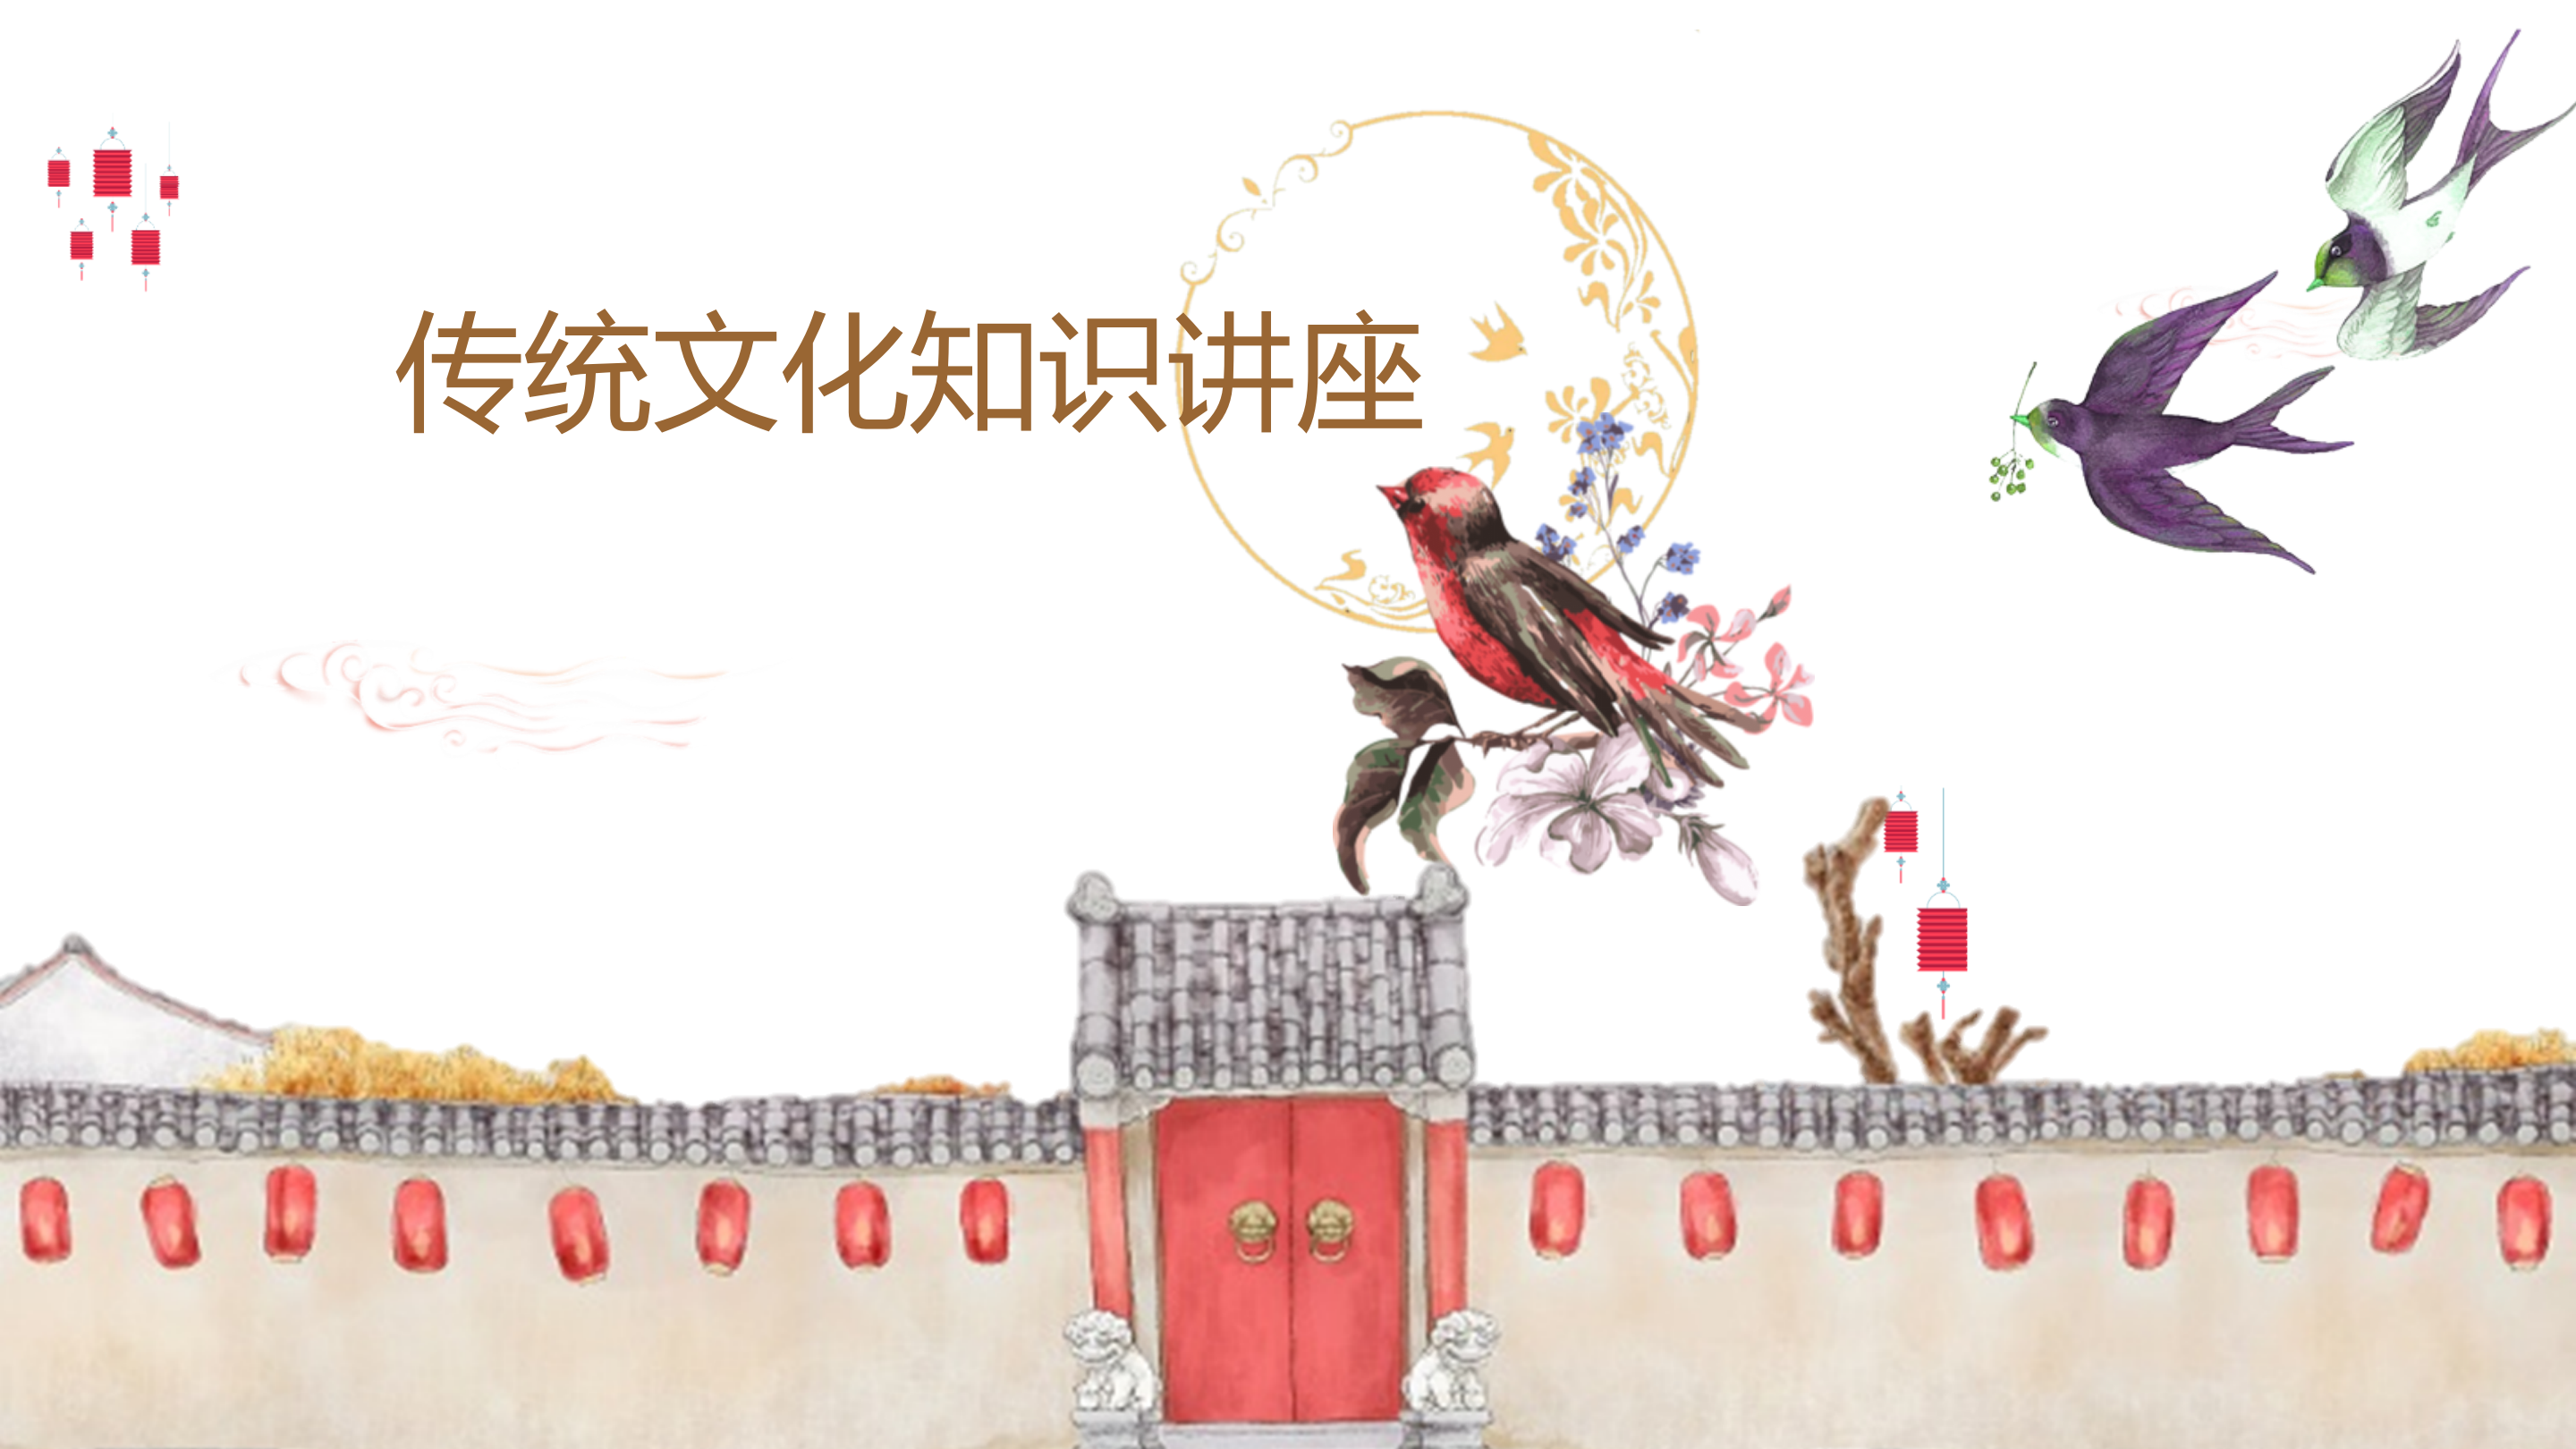 古典中国风弘扬传统文化知识讲座PPT模板